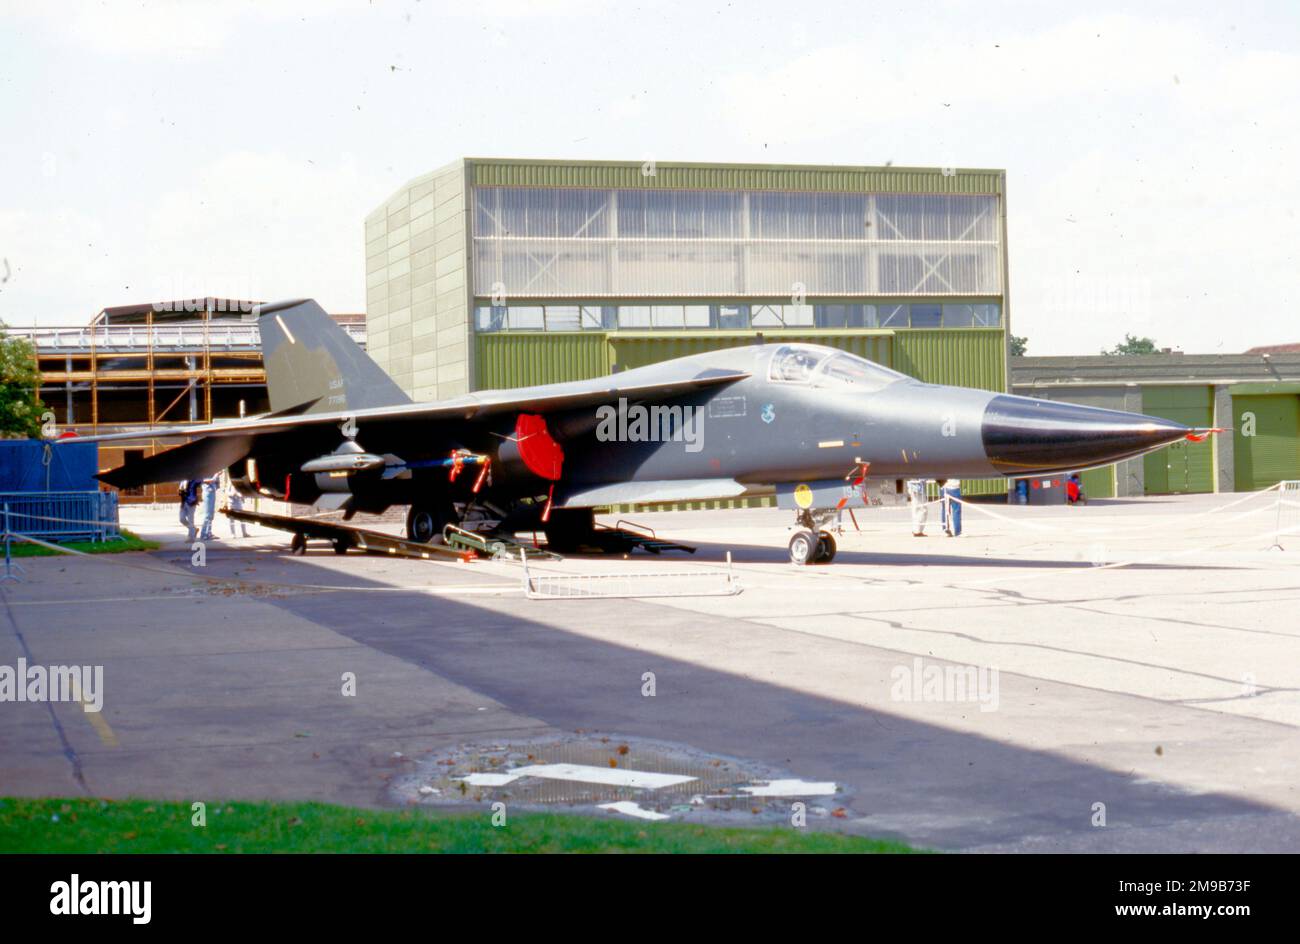 United States Air Force (USAF) - General Dynamics FB-111A 67-7196 (msn B1-010), lors de la rencontre de la force aérienne tactique de Waddington le 2 août 1986 Banque D'Images